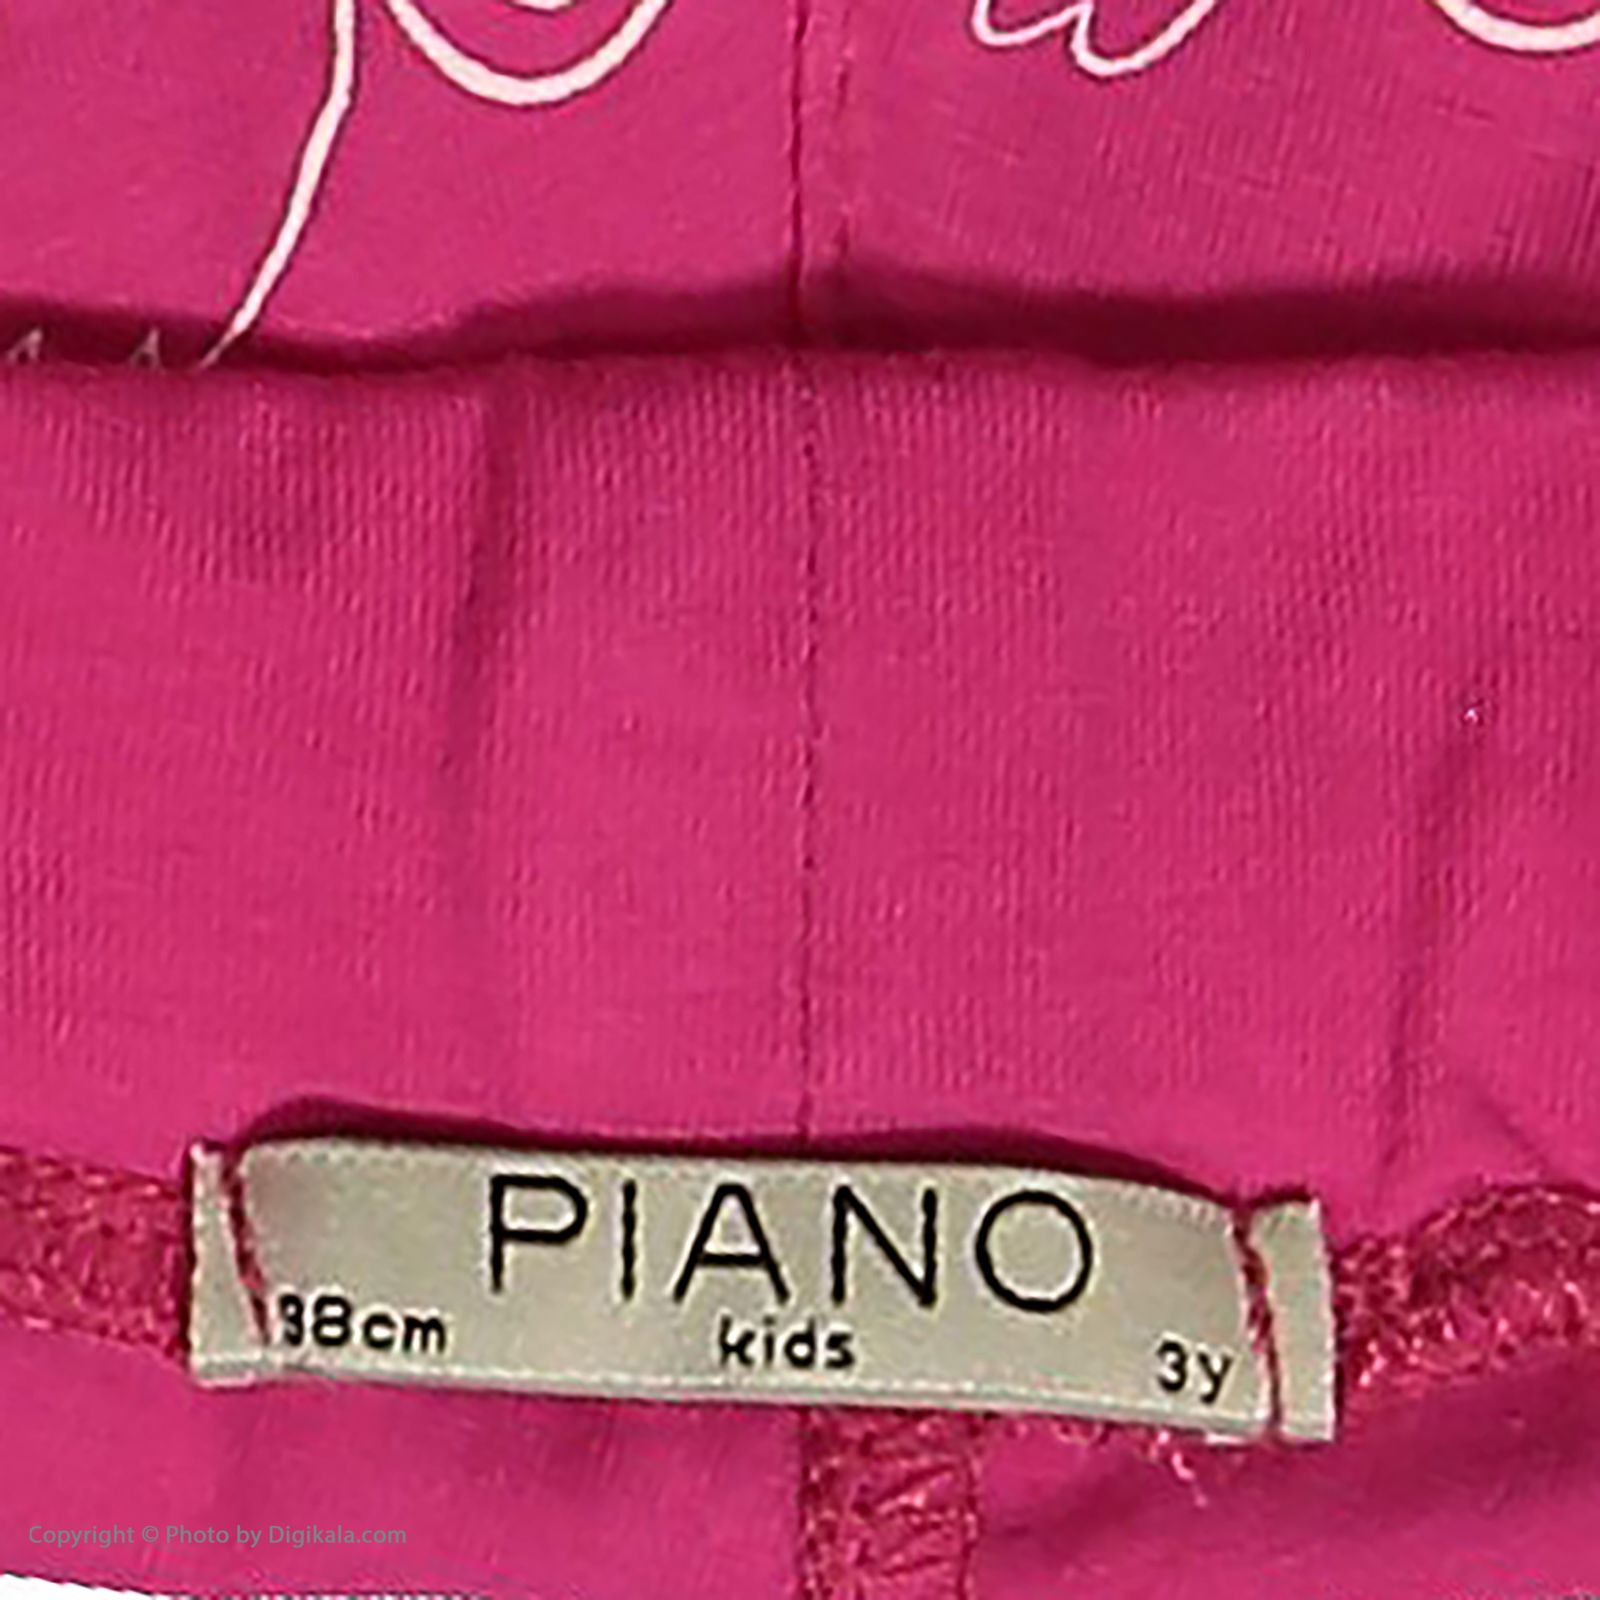 ست تی شرت و شلوار دخترانه پیانو مدل 1856-05 -  - 3